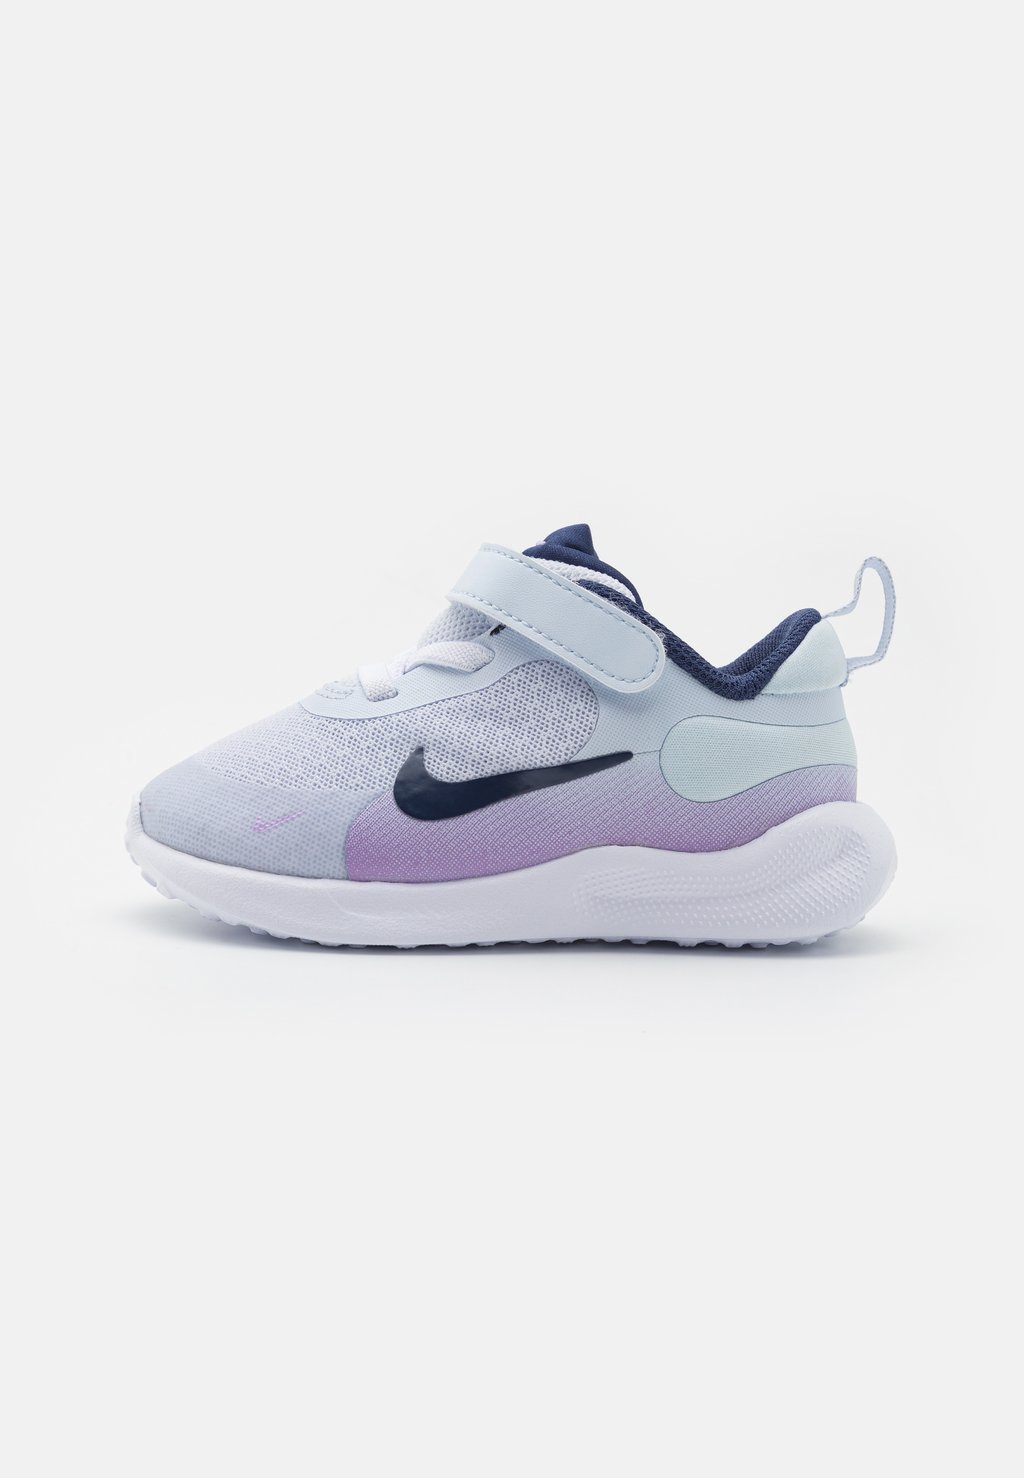 Нейтральные кроссовки Revolution 7 Unisex Nike, цвет football grey/midnight navy/lilac bloom/lilac